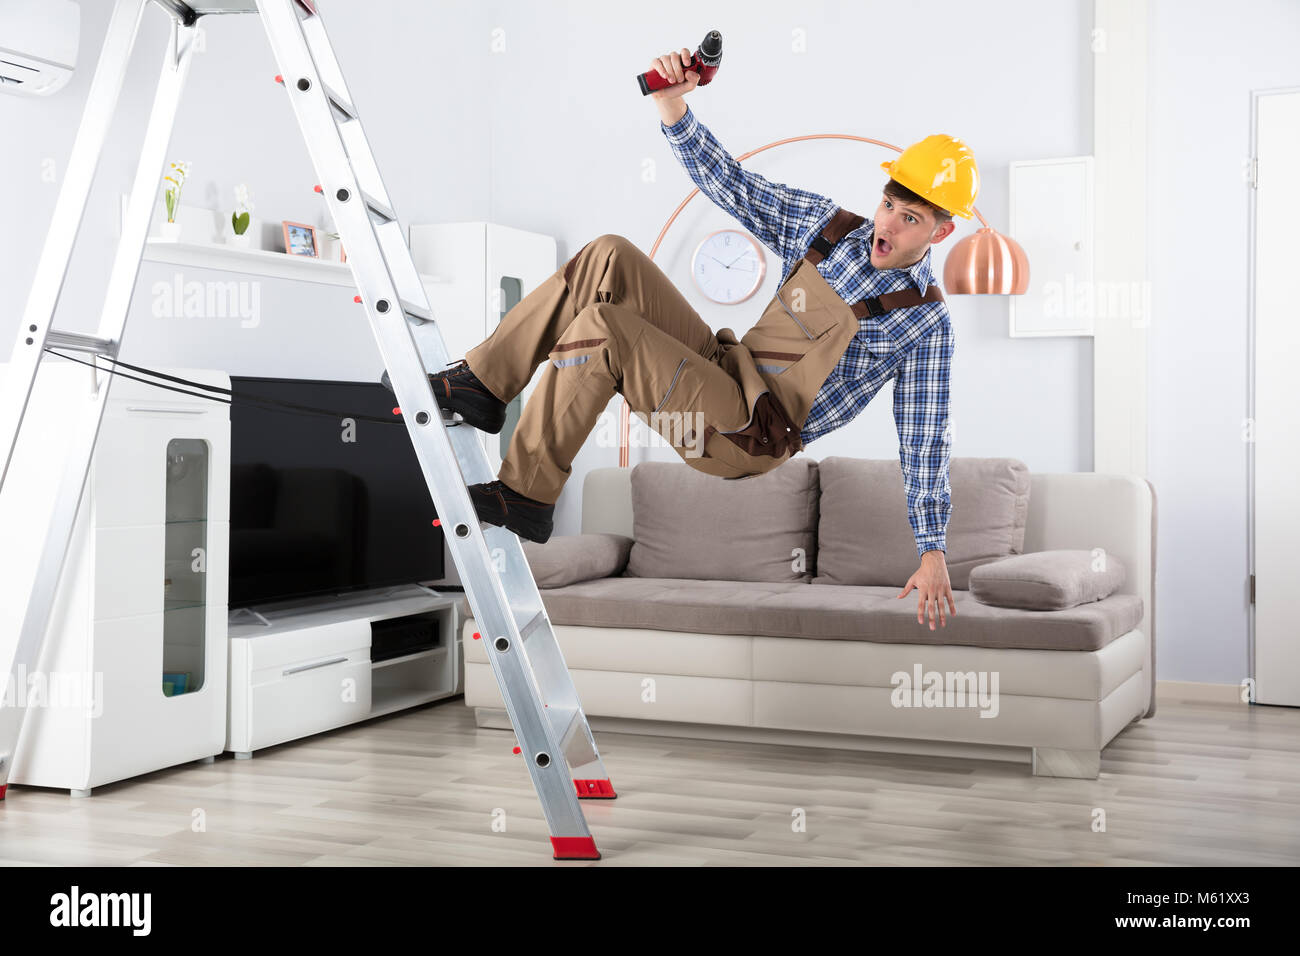 Junge männliche Tischler Fallen aus Metall Leiter im Wohnzimmer  Stockfotografie - Alamy